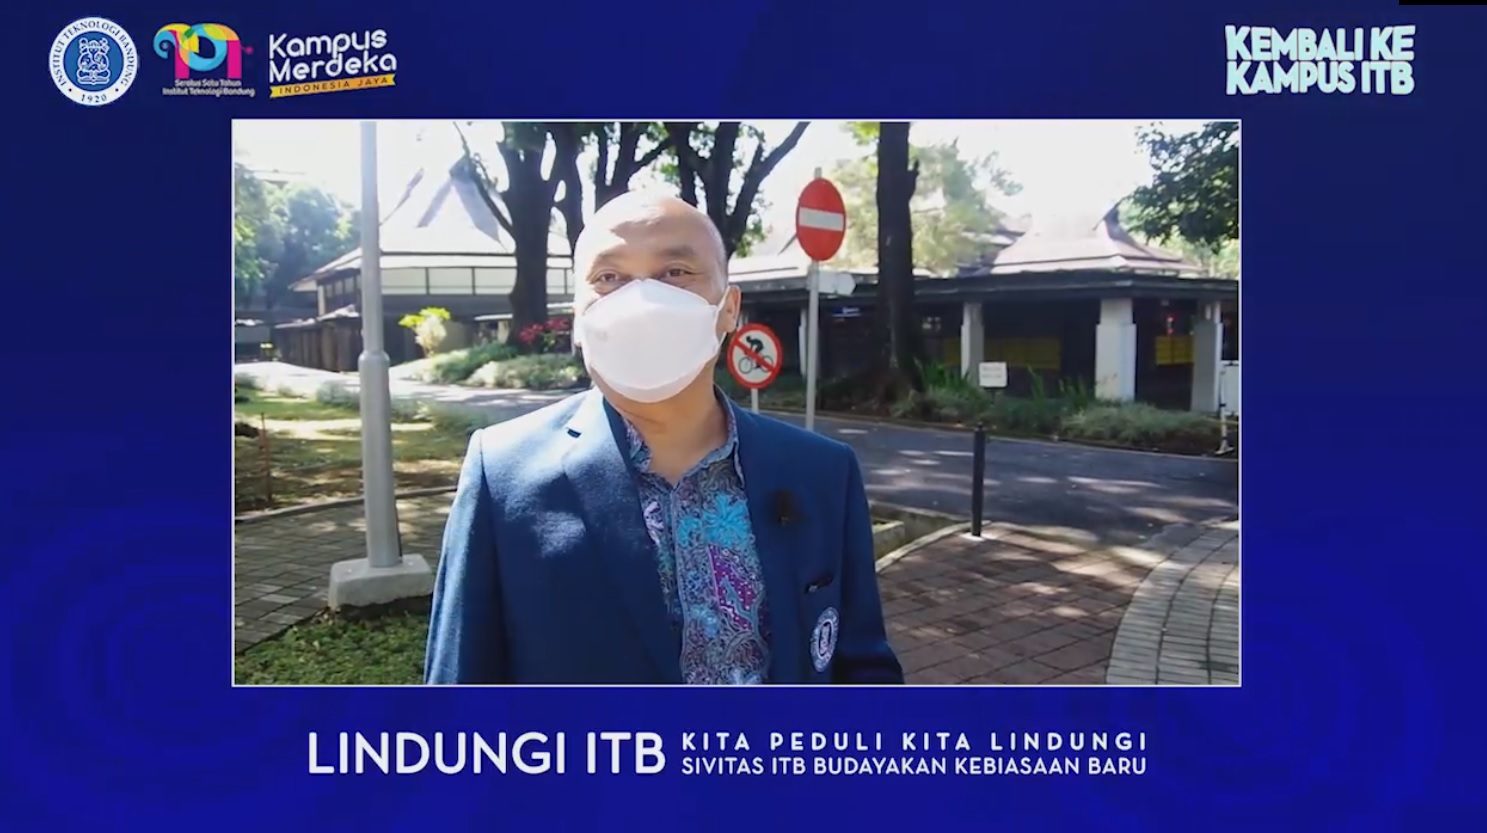 Kembali ke Kampus Institut Teknologi Bandung (ITB)